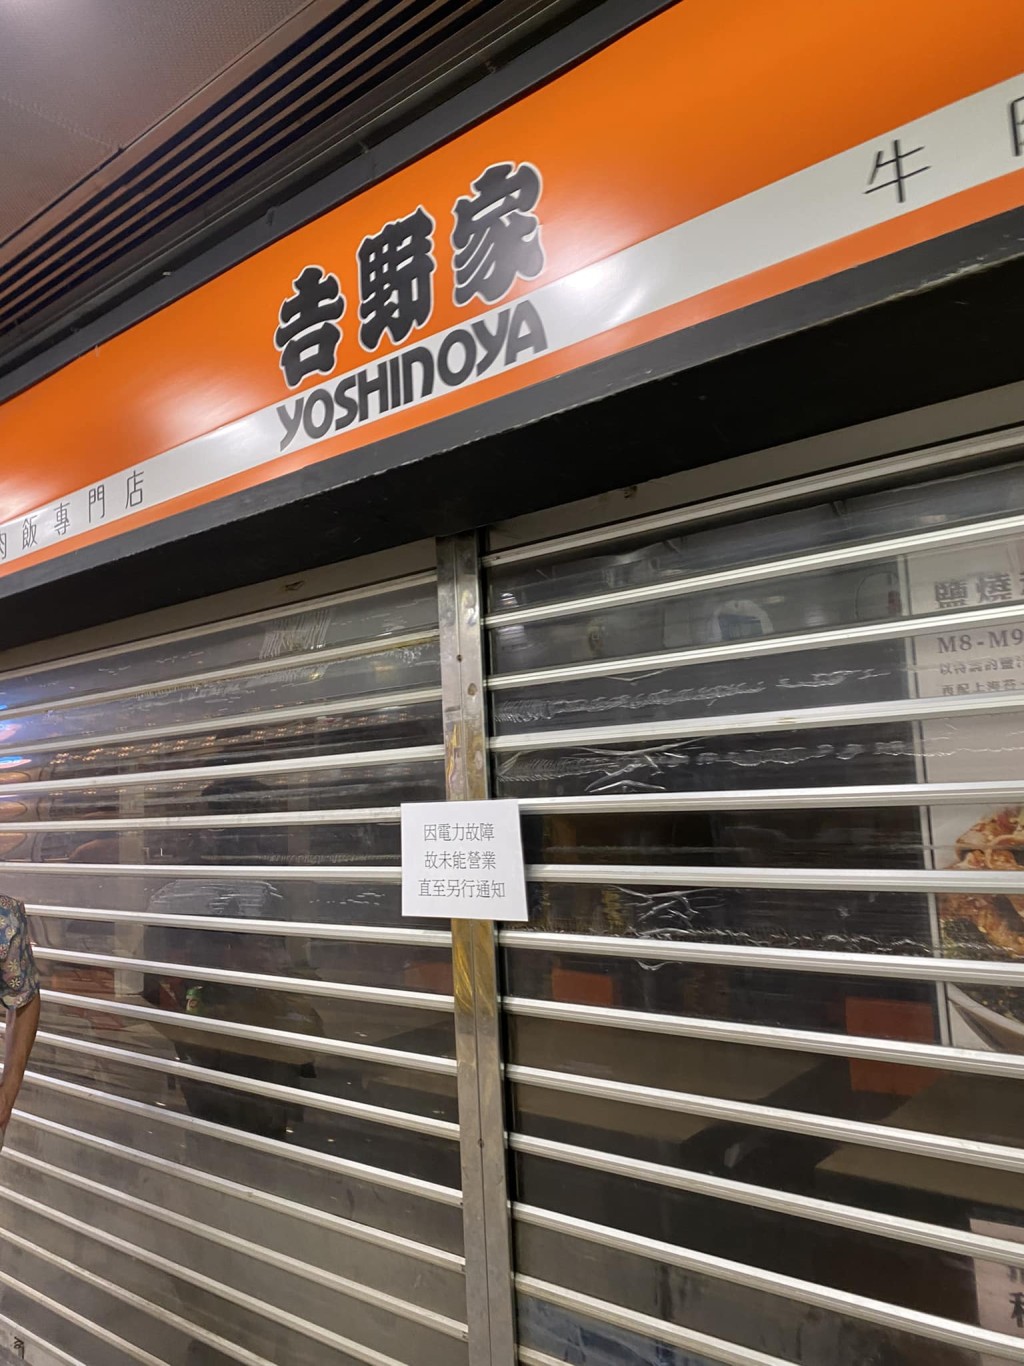 西九龙中心多间大型连锁餐厅因停电而未有营业。网上图片